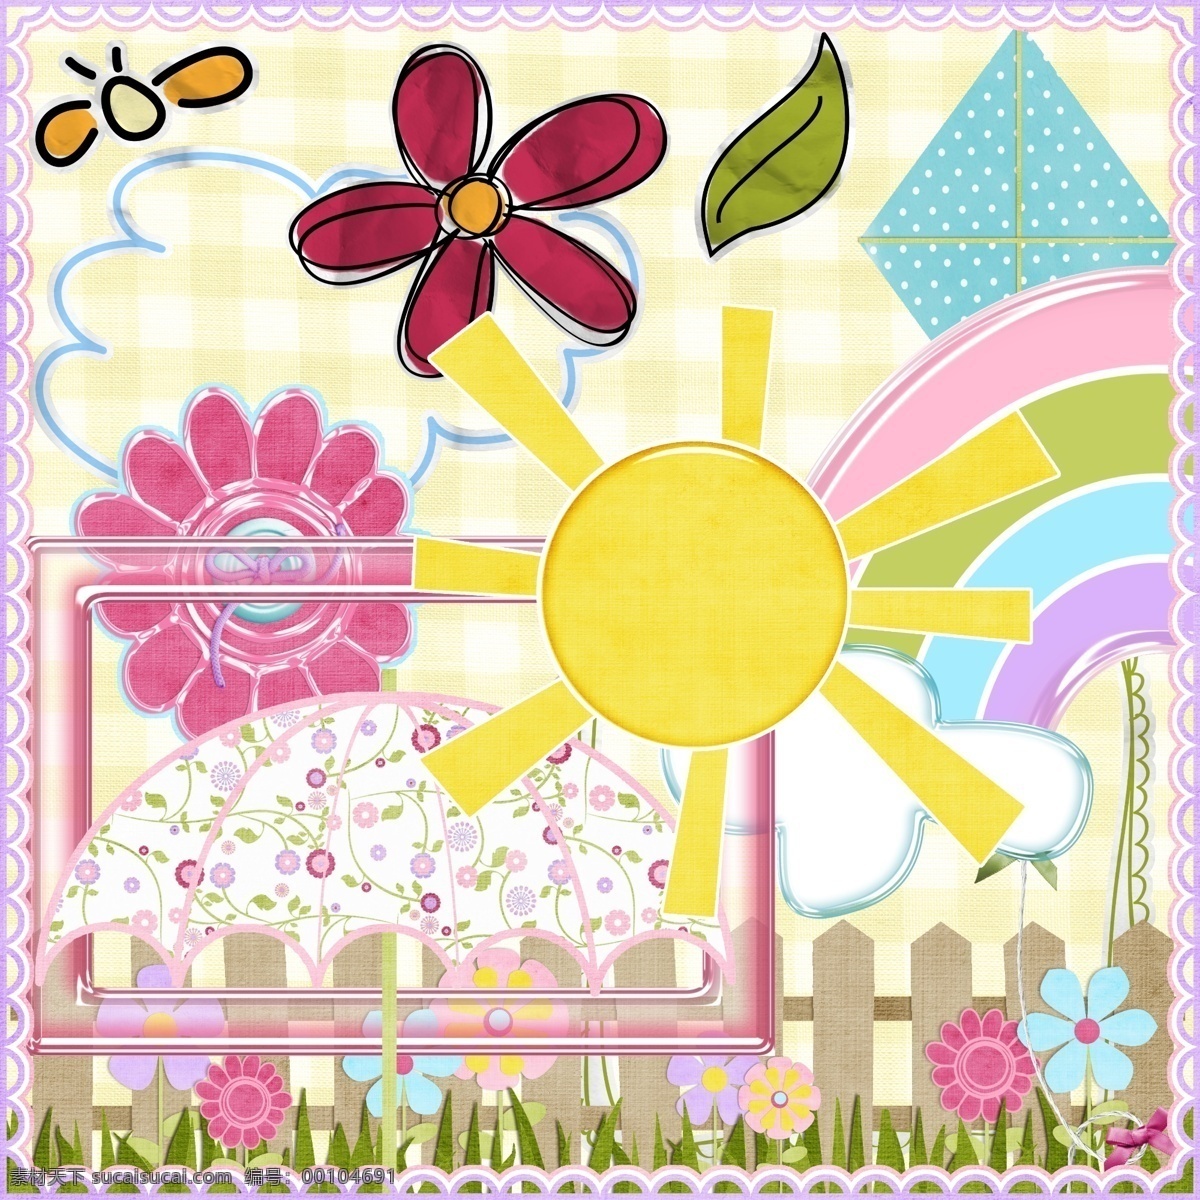 欧美 风格 可爱 太阳 花边 相框 雨伞 彩虹 蝴蝶 花朵 边框 云朵 风筝 蕾丝 分层 源文件